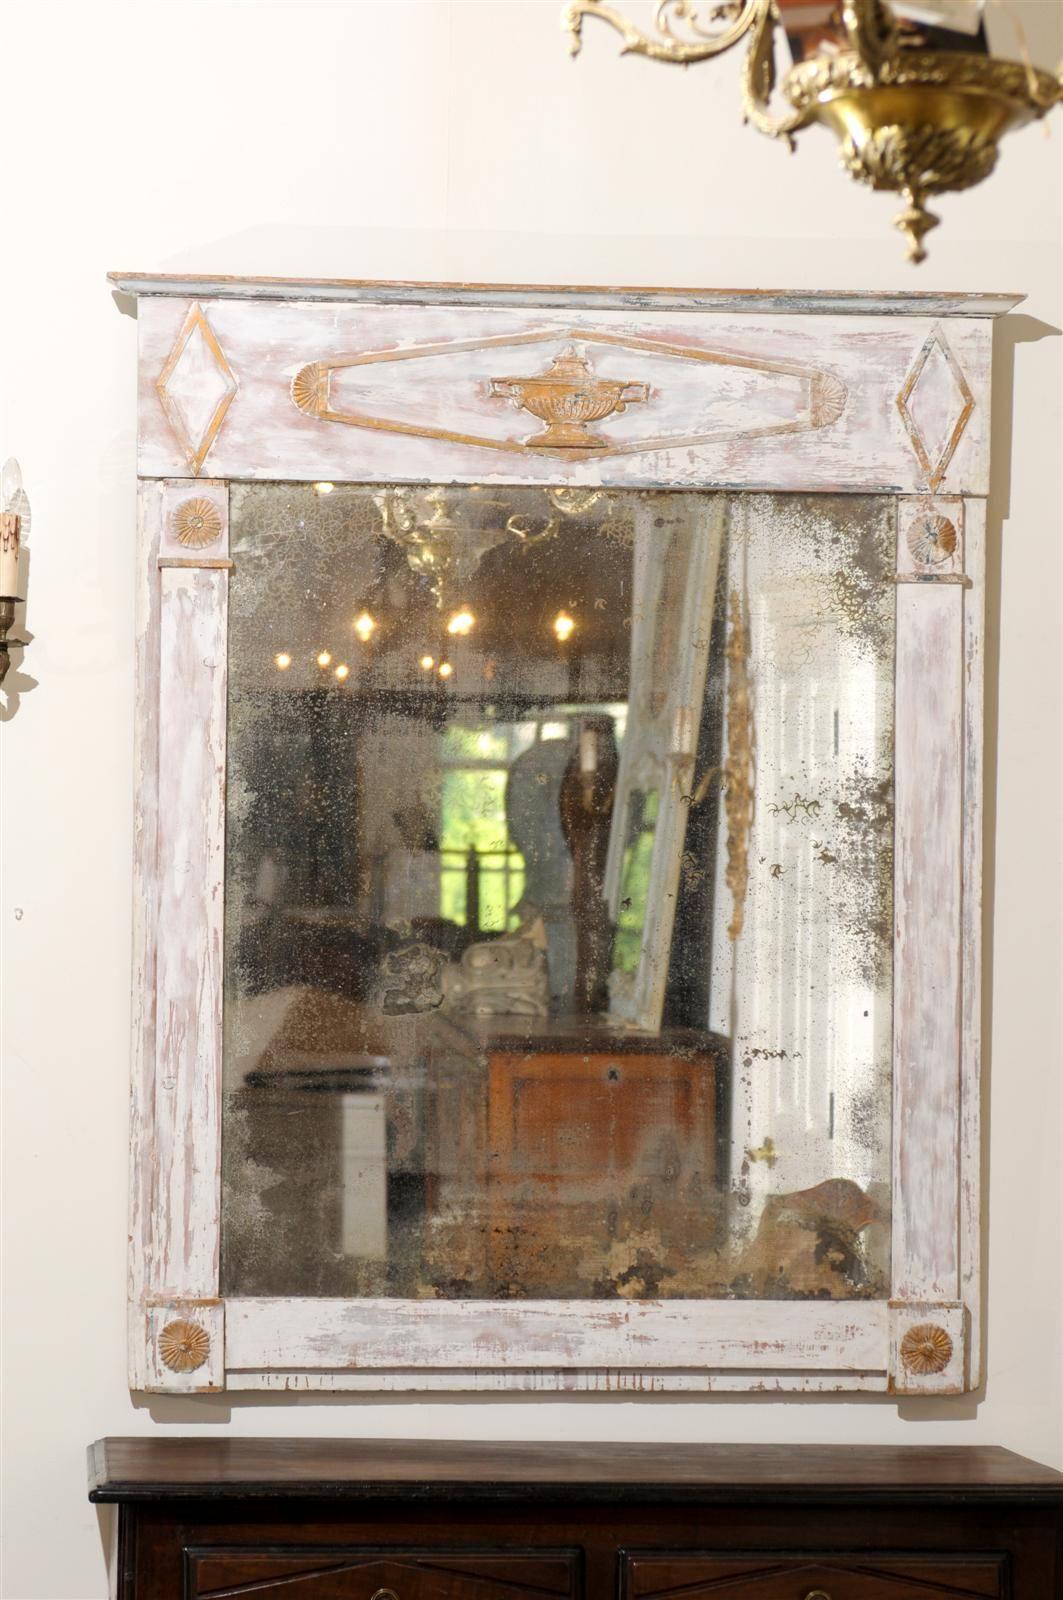 Ein französischer Directoire-Trumeau-Spiegel aus dem späten 18. Jahrhundert mit vergoldeten Akzenten, geschnitzter Urne, beschädigter Farbe und Spiegel. Dieser französische Directoire-Spiegel zeichnet sich durch eine elegante lineare Silhouette aus.